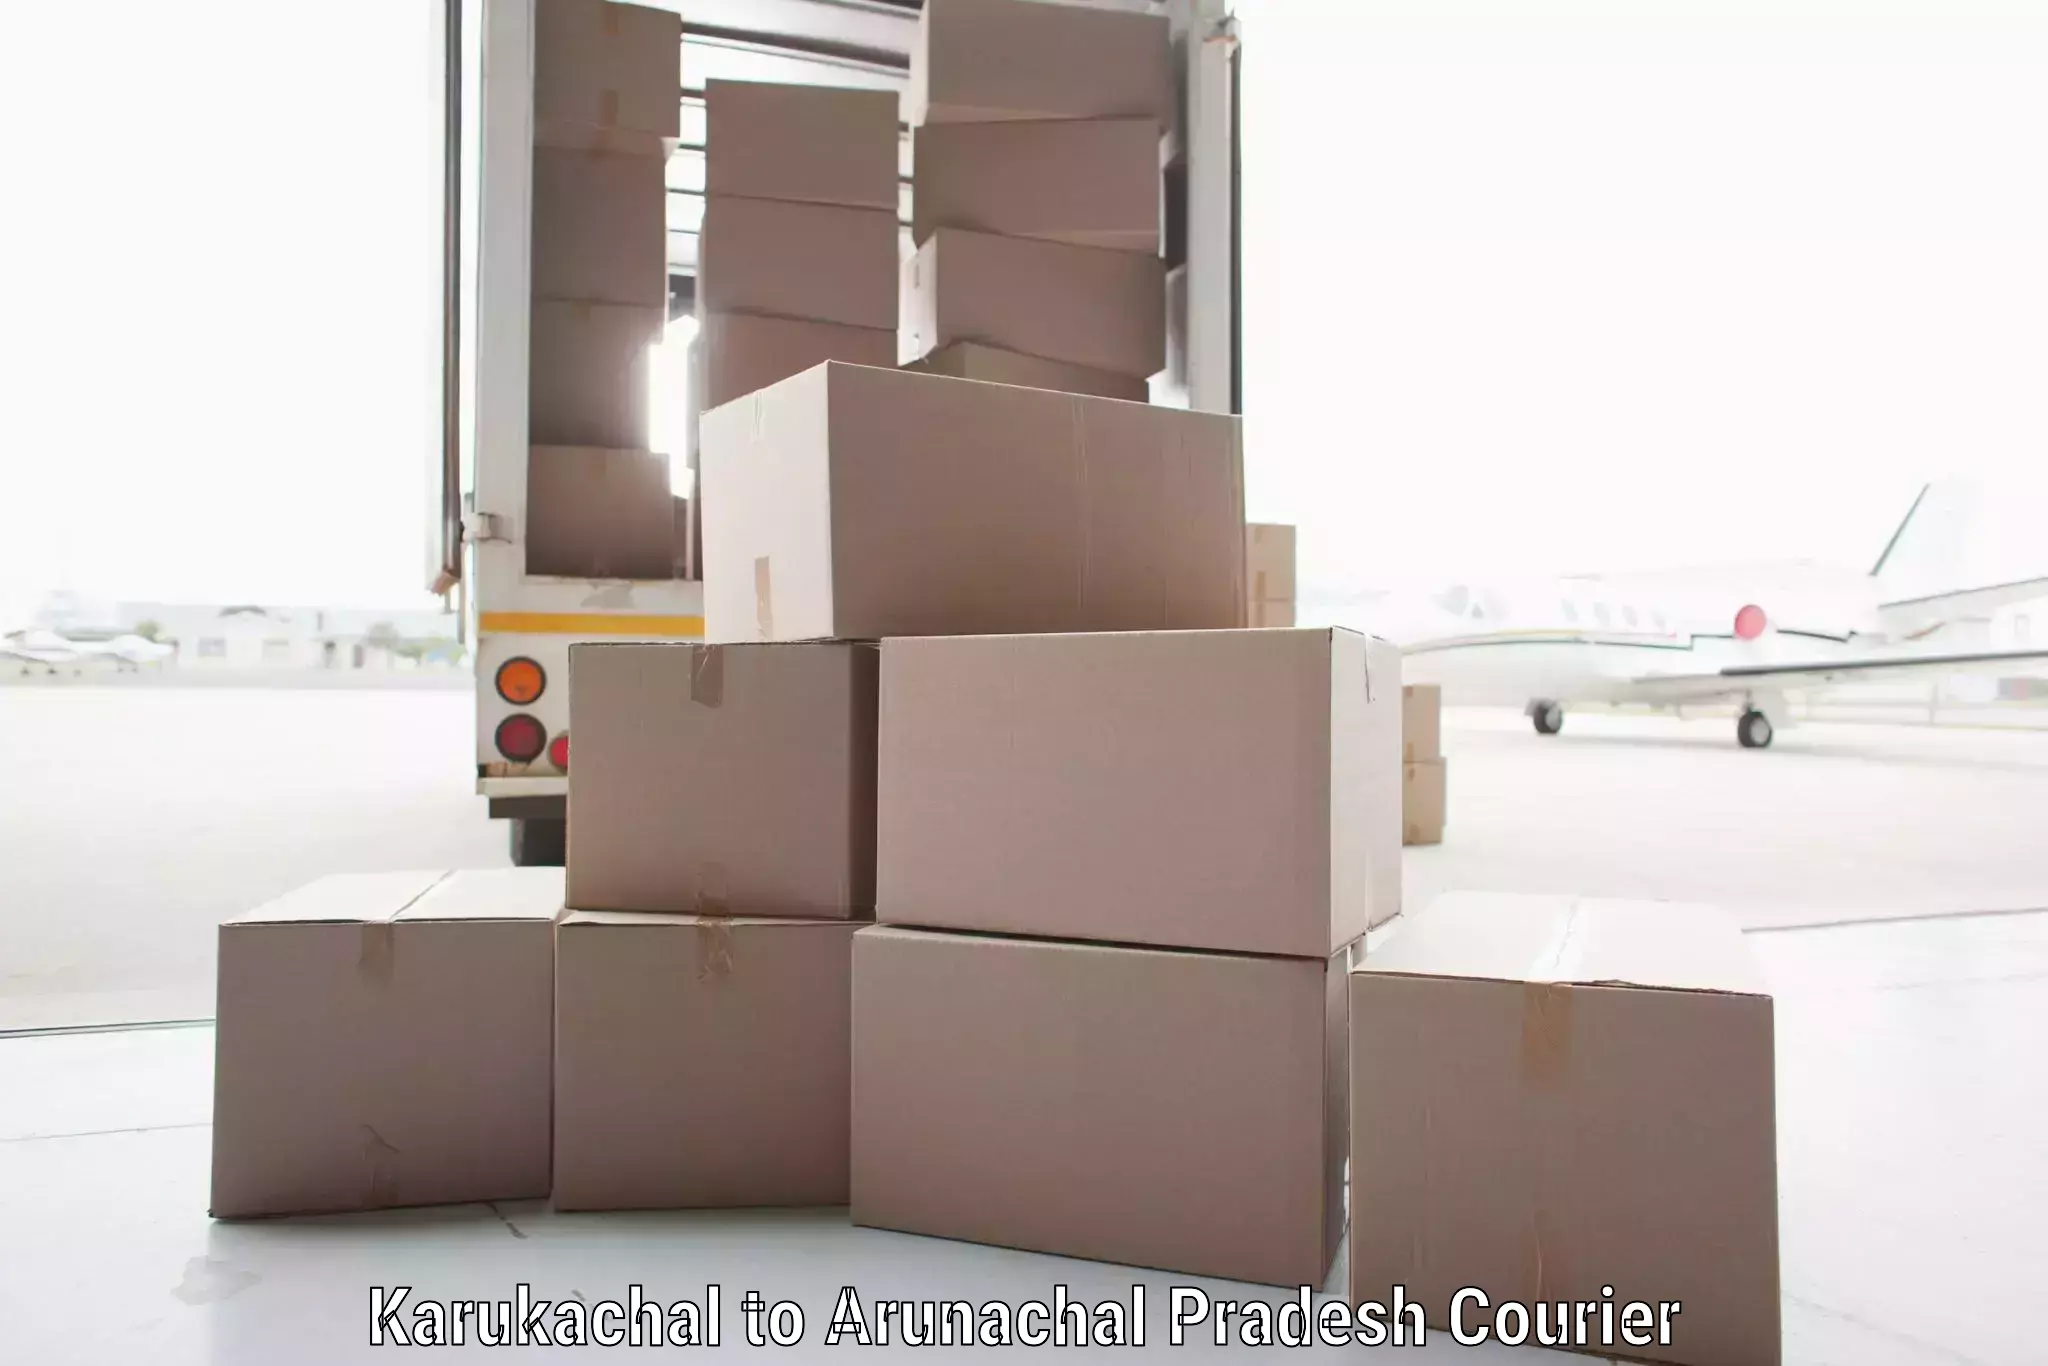 Lightweight parcel options in Karukachal to Itanagar